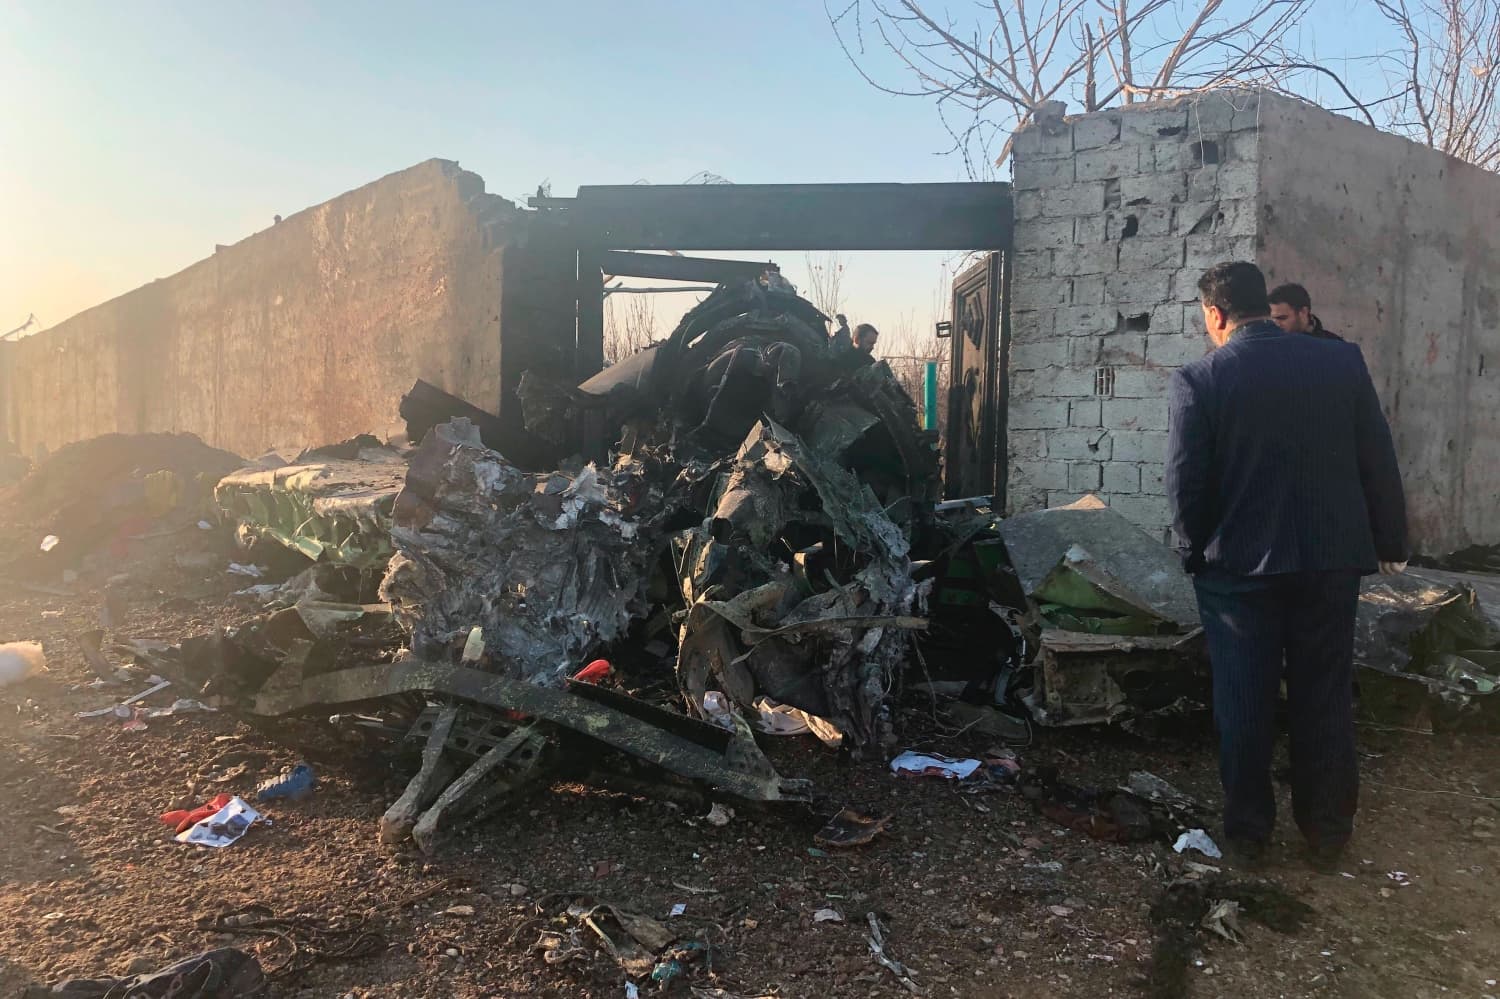 Jordániai sajtóértesülés szerint az iráni légvédelem lőtte le az ukrán gépet